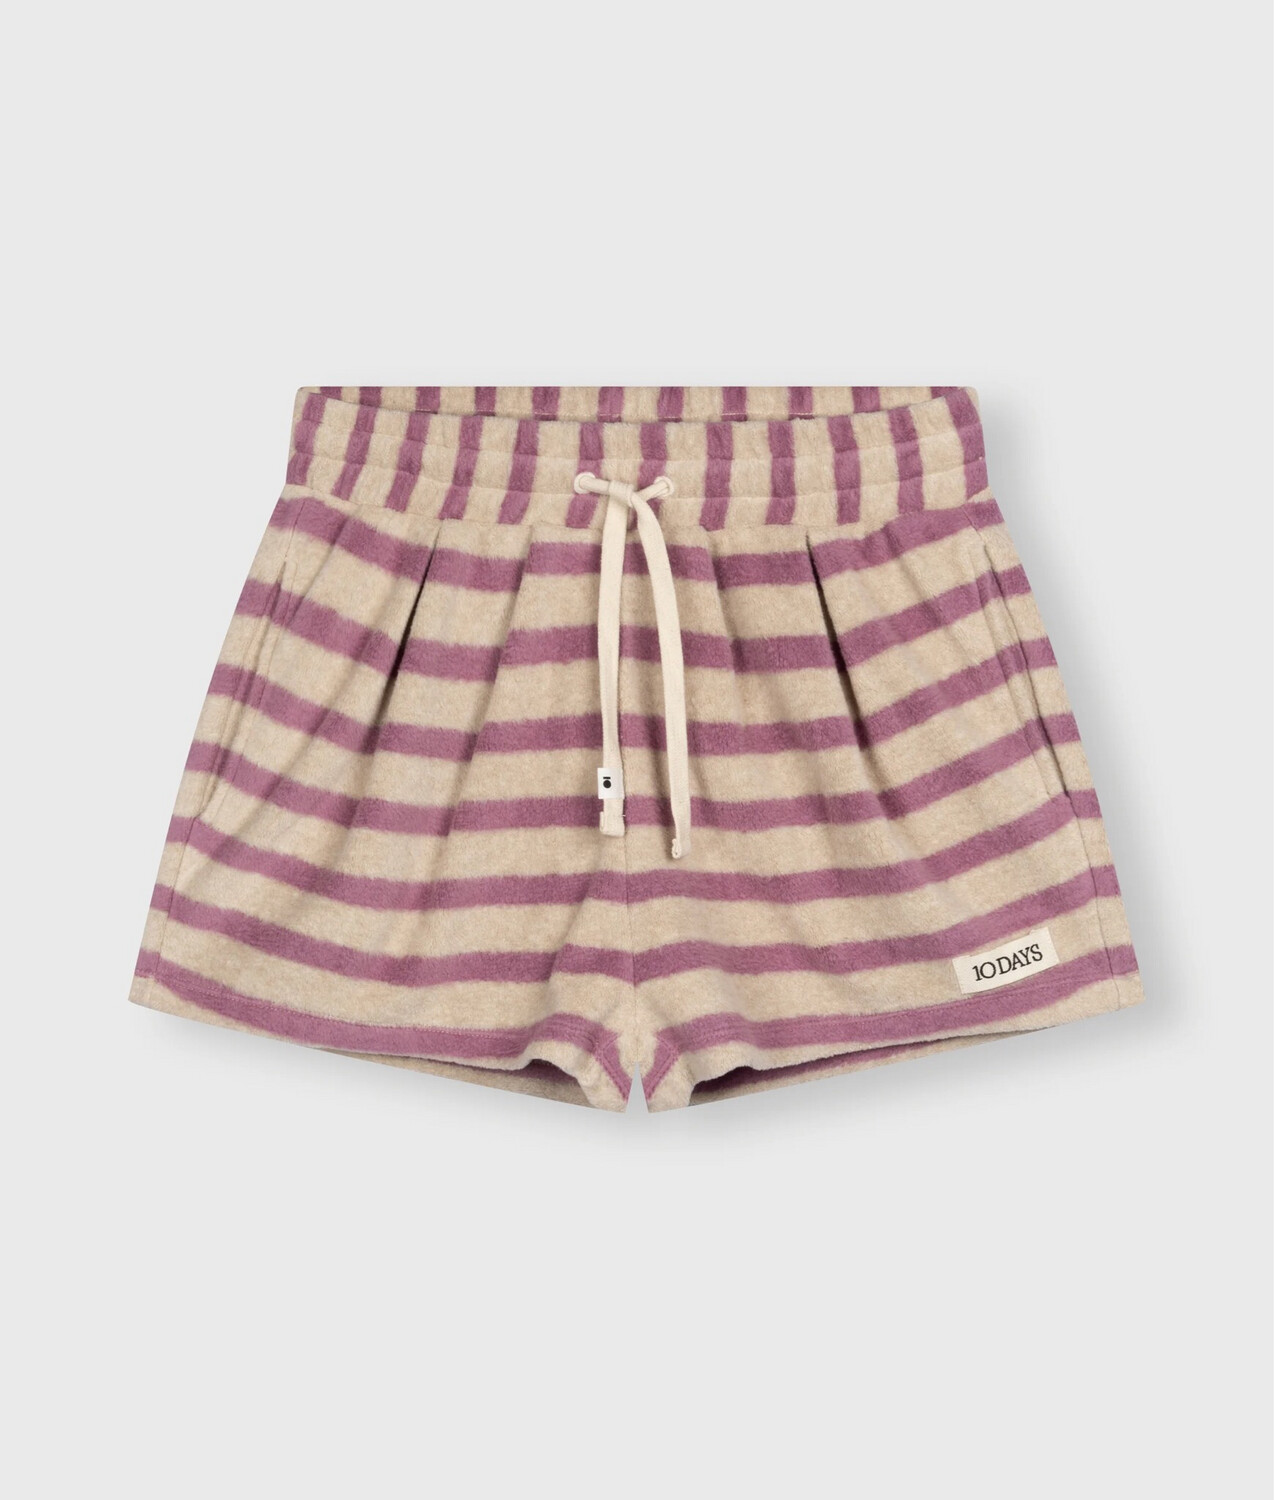 10 Days toweling shorts stripes violet